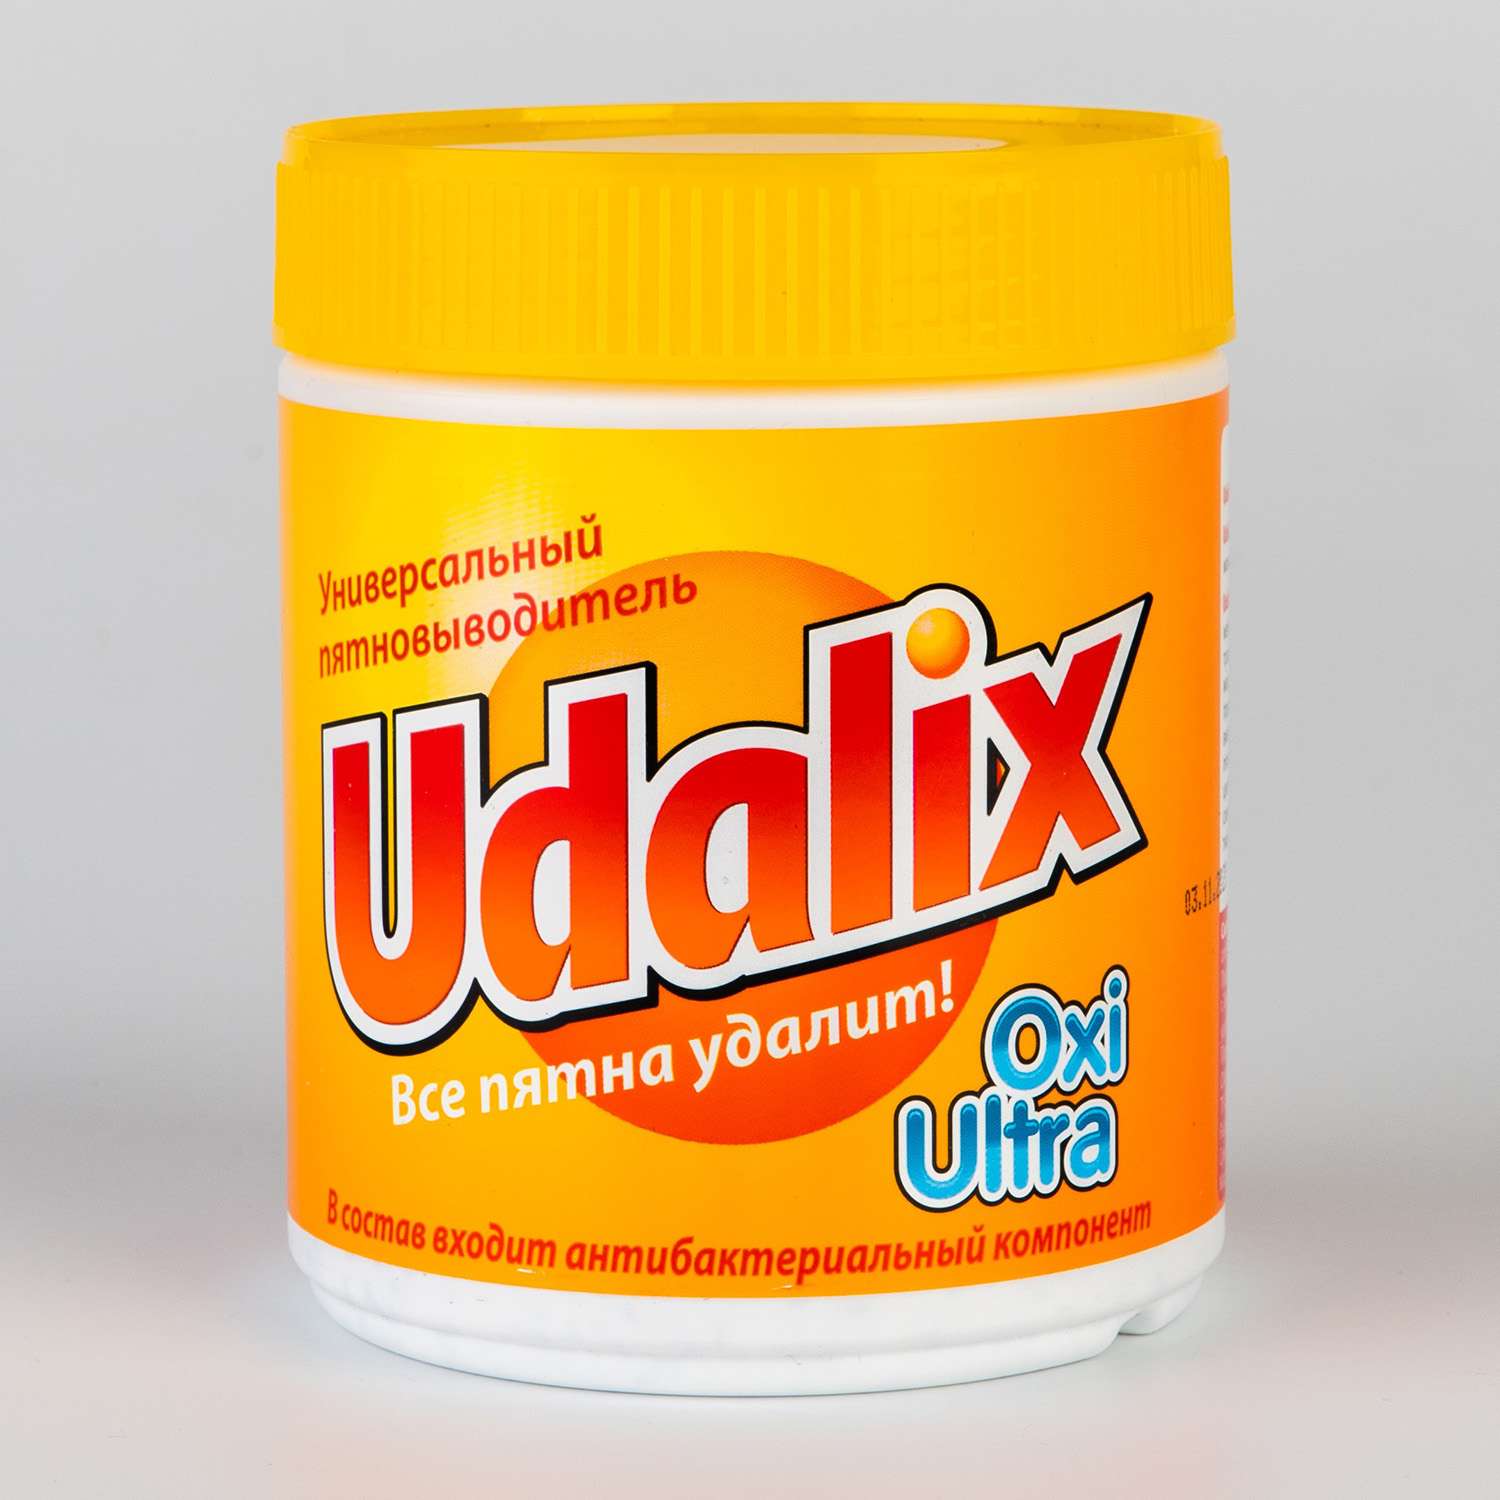 Пятновыводитель Udalix Oxi Ultra 500 г - фото 1